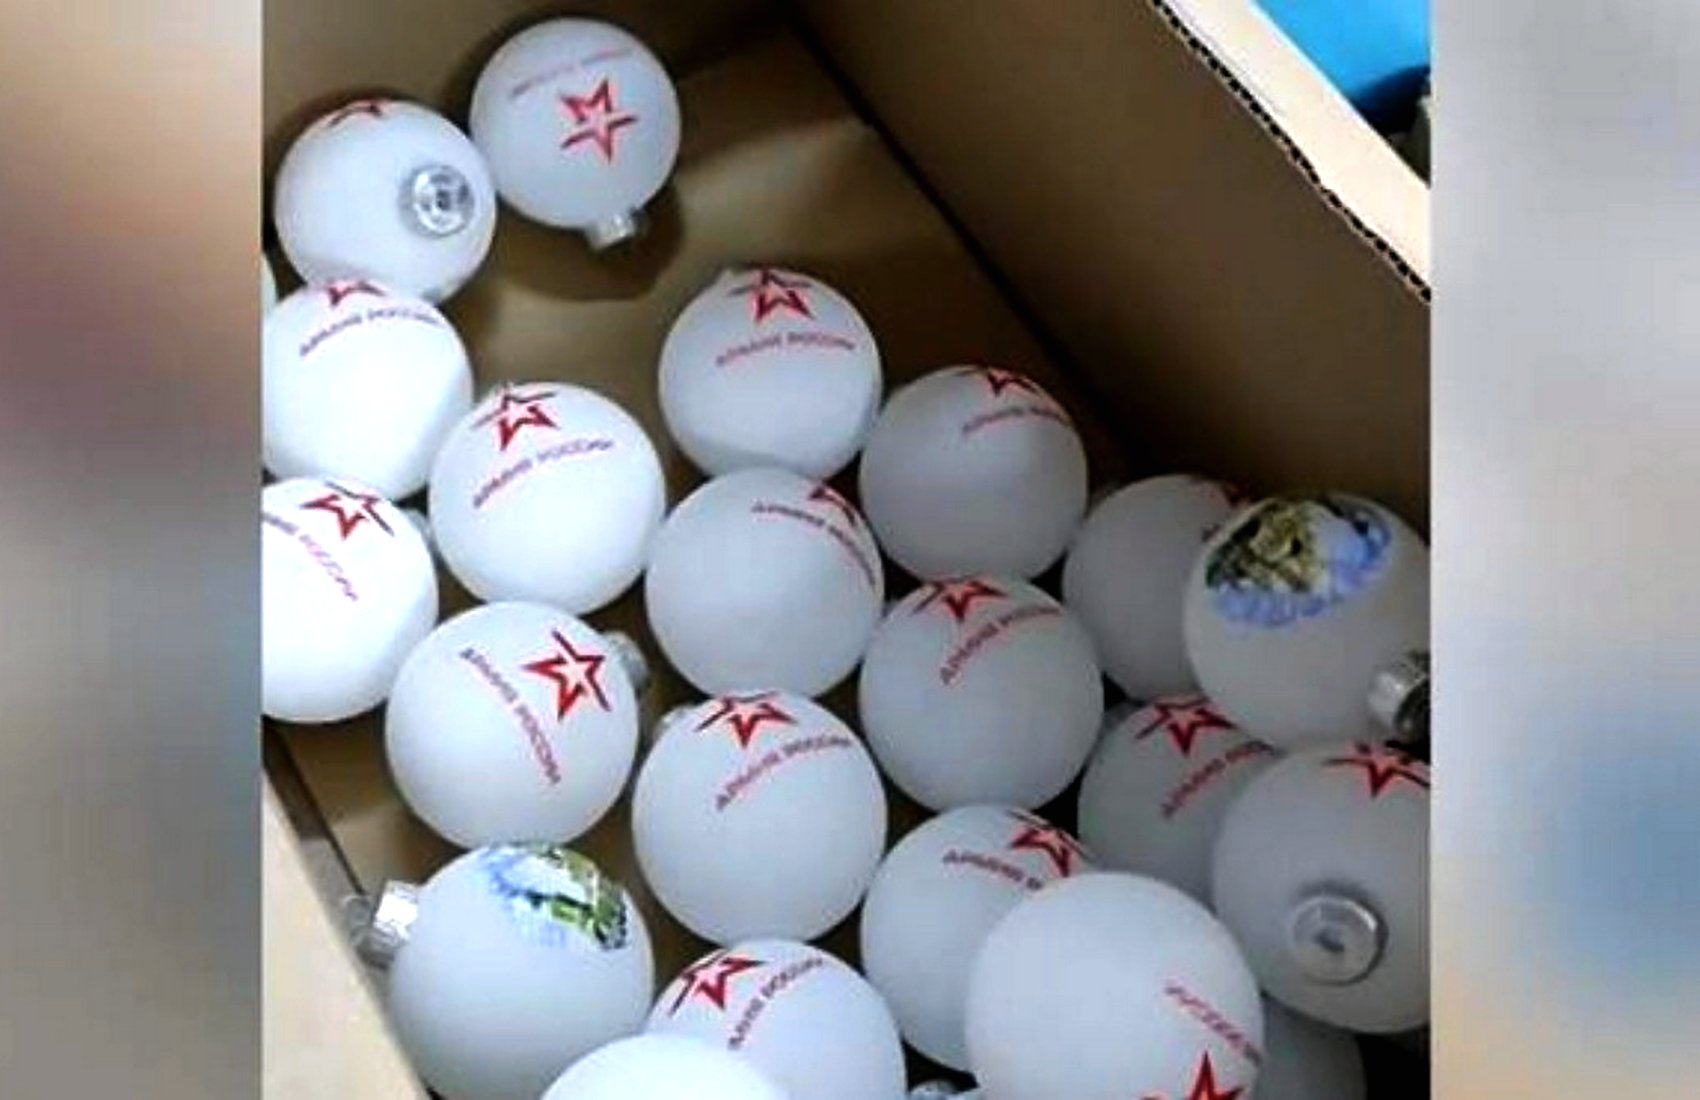 АТОшники приехали на фабрику ёлочных игрушек, которая выпускала шары с символикой армии РФ (видео)